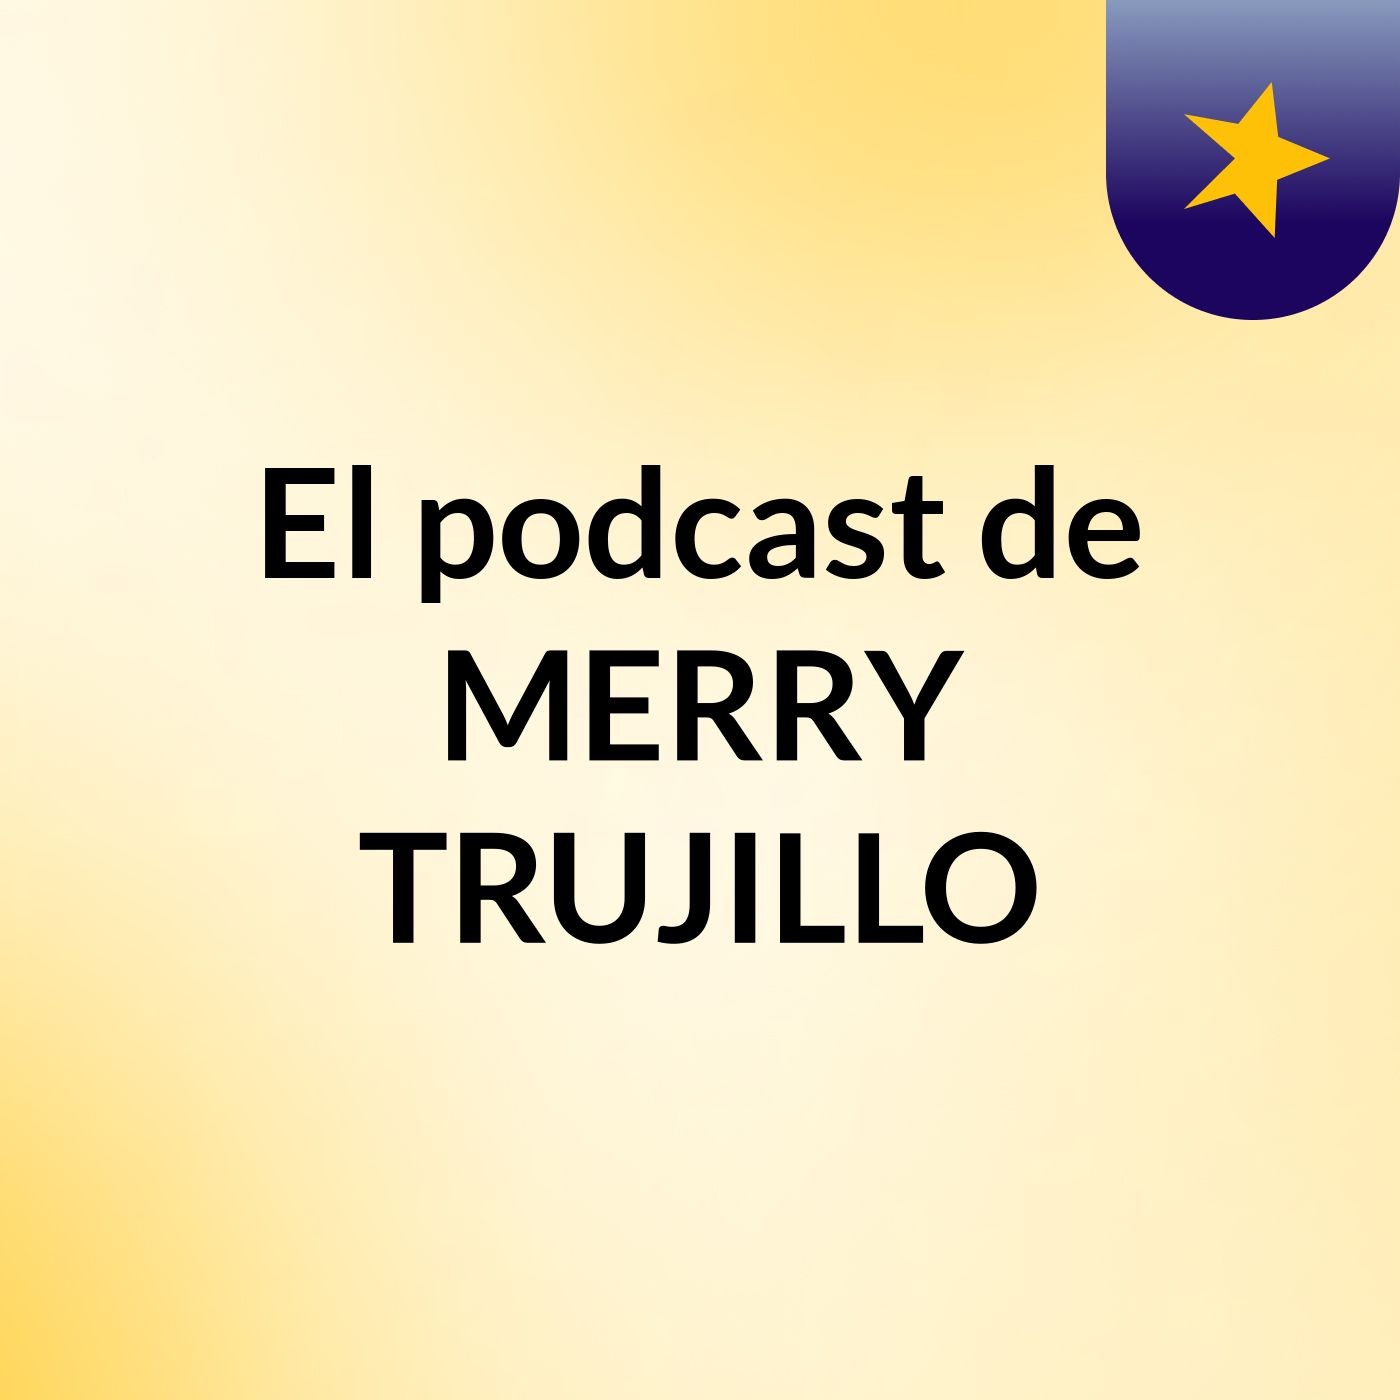 El podcast de MERRY TRUJILLO